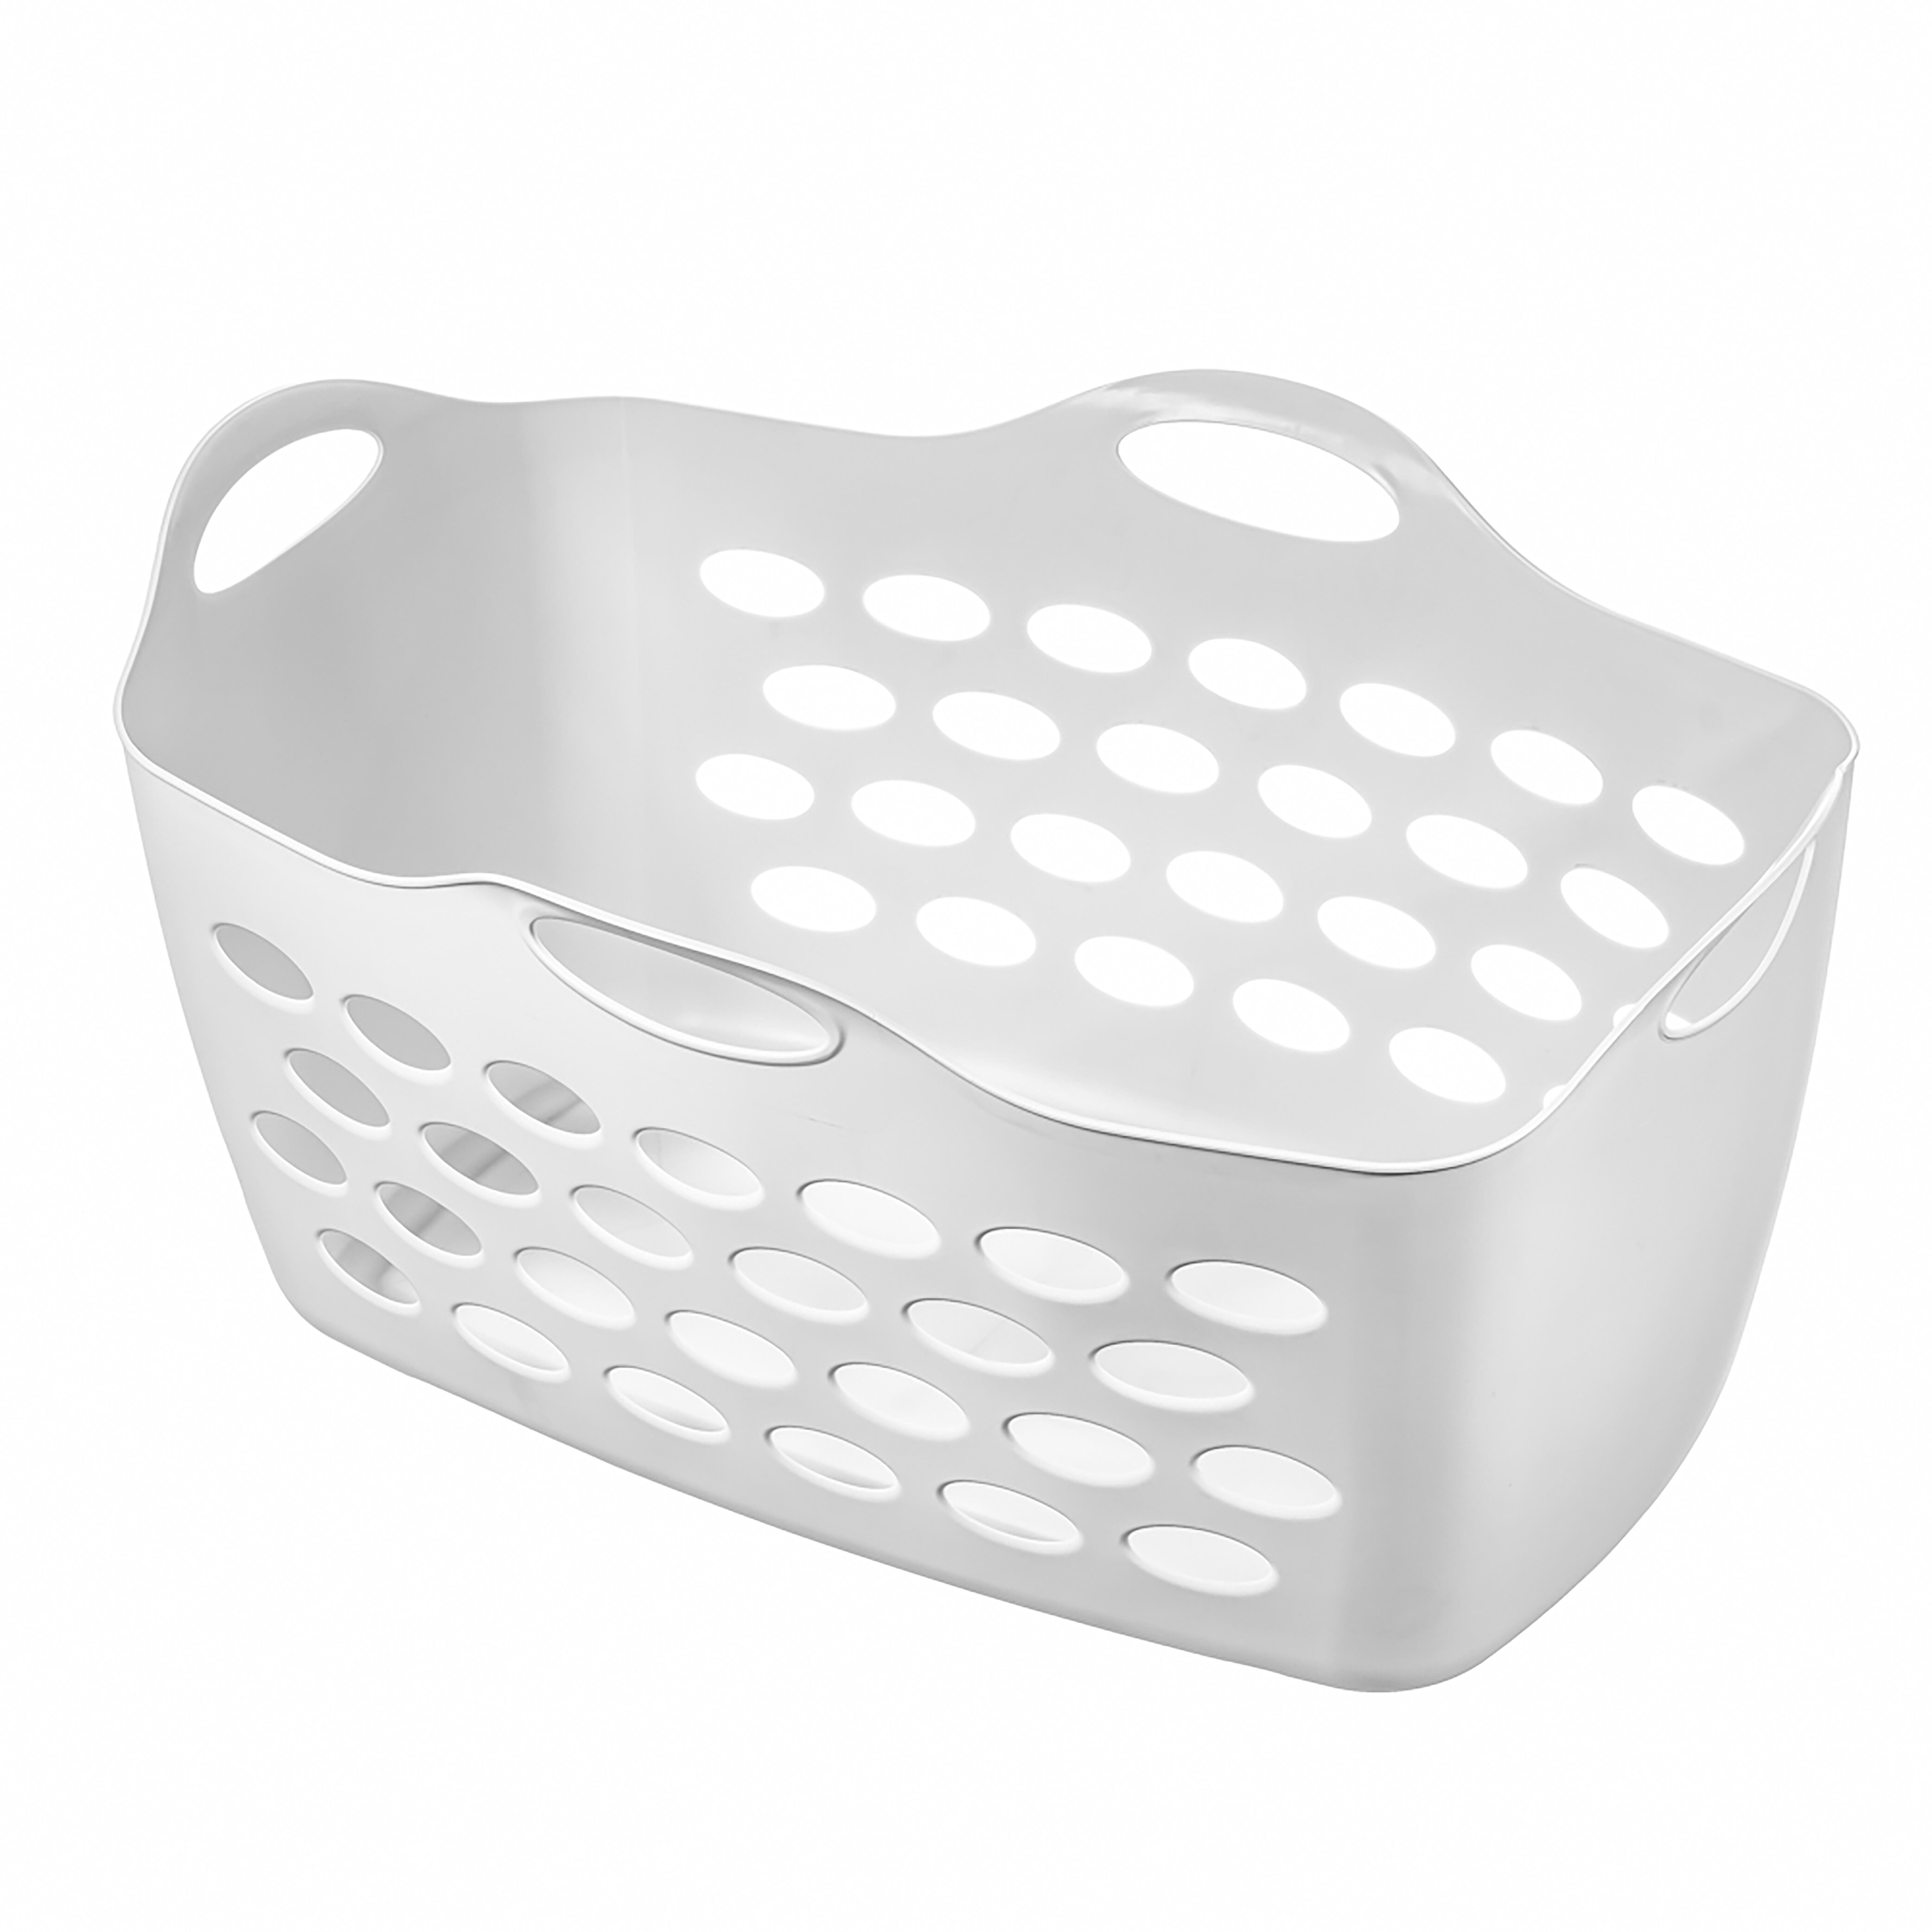 https://assets.wfcdn.com/im/11720087/compr-r85/1690/169001312/rectangular-flexible-laundry-basket.jpg